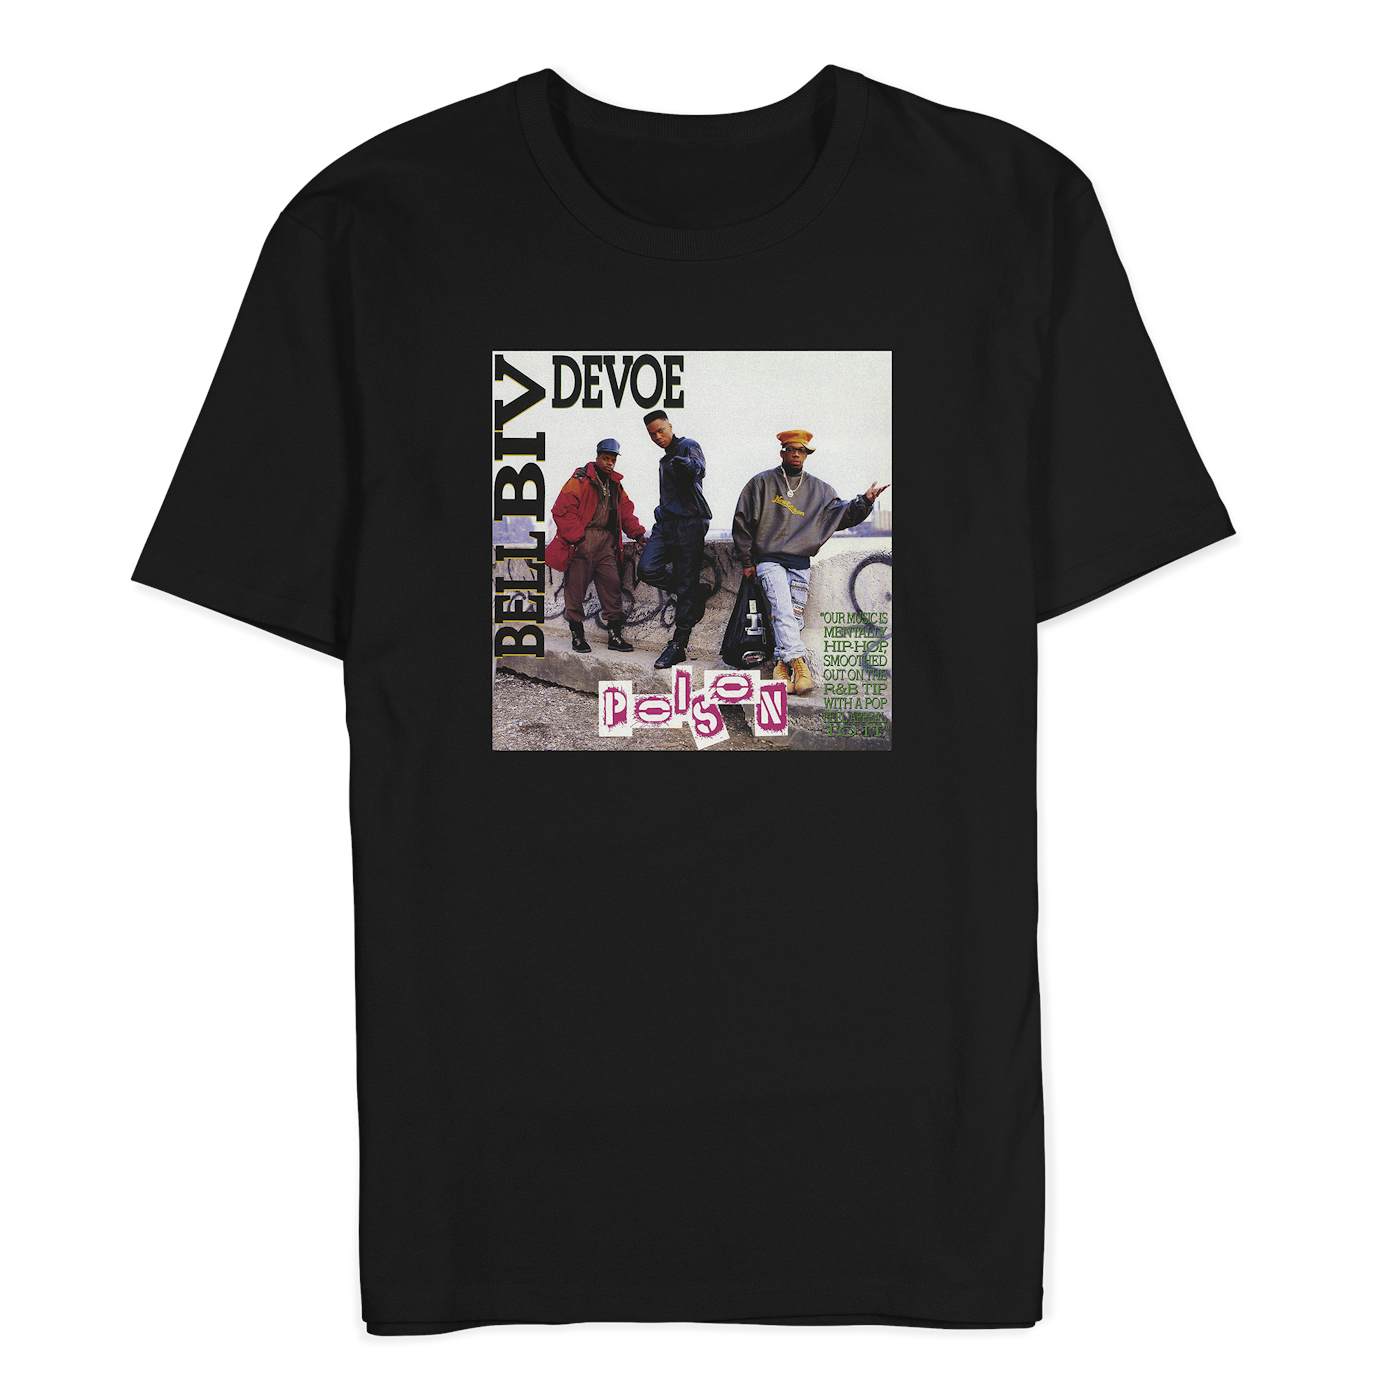 Bell Biv DeVoe "Poison Album Art" T-Shirt in Black